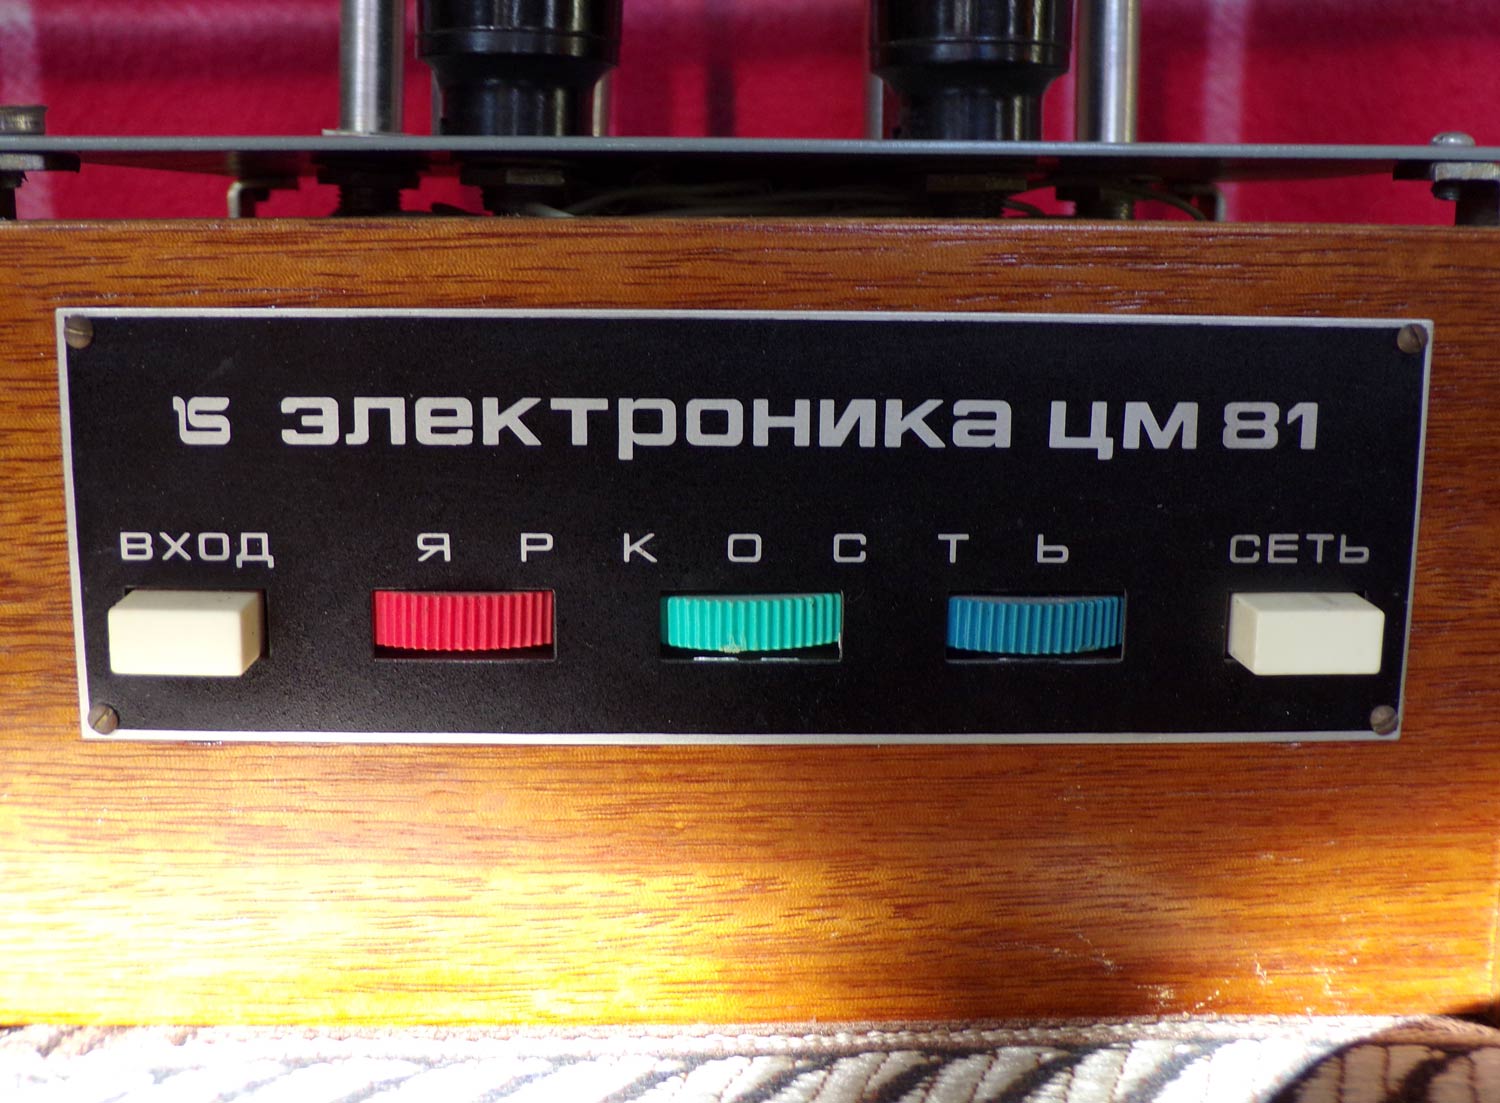 Электроника ЦМ-81